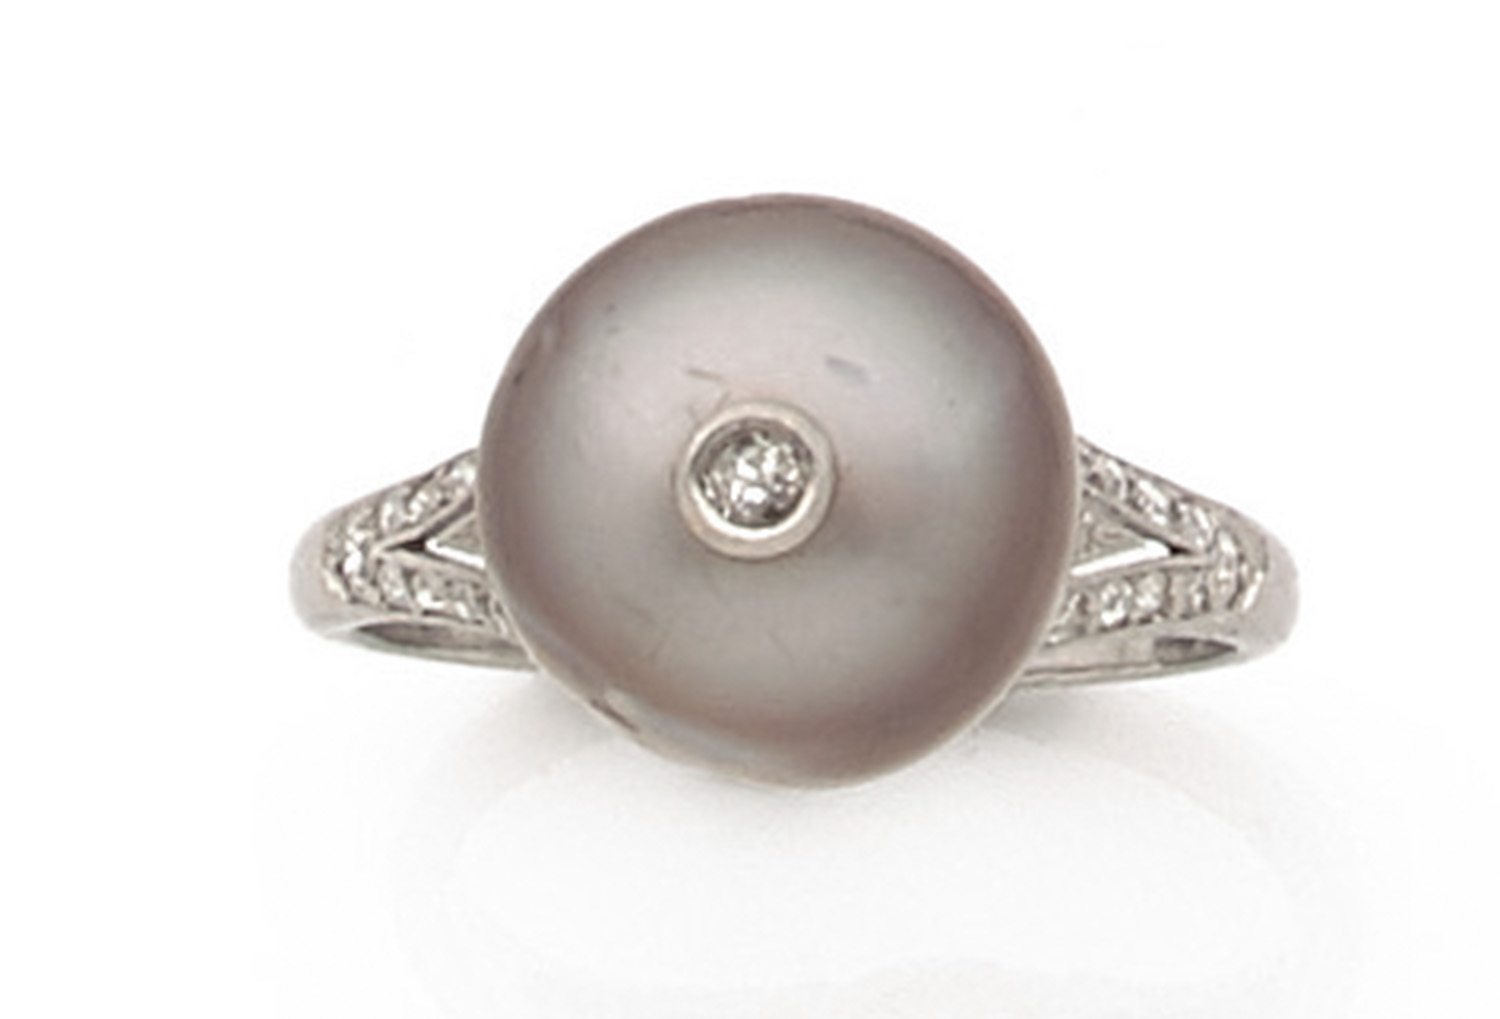 BAGUE PERLE GRISE Elle est ornée d'une perle bouton grise piquée d'un diamant taille brillant.